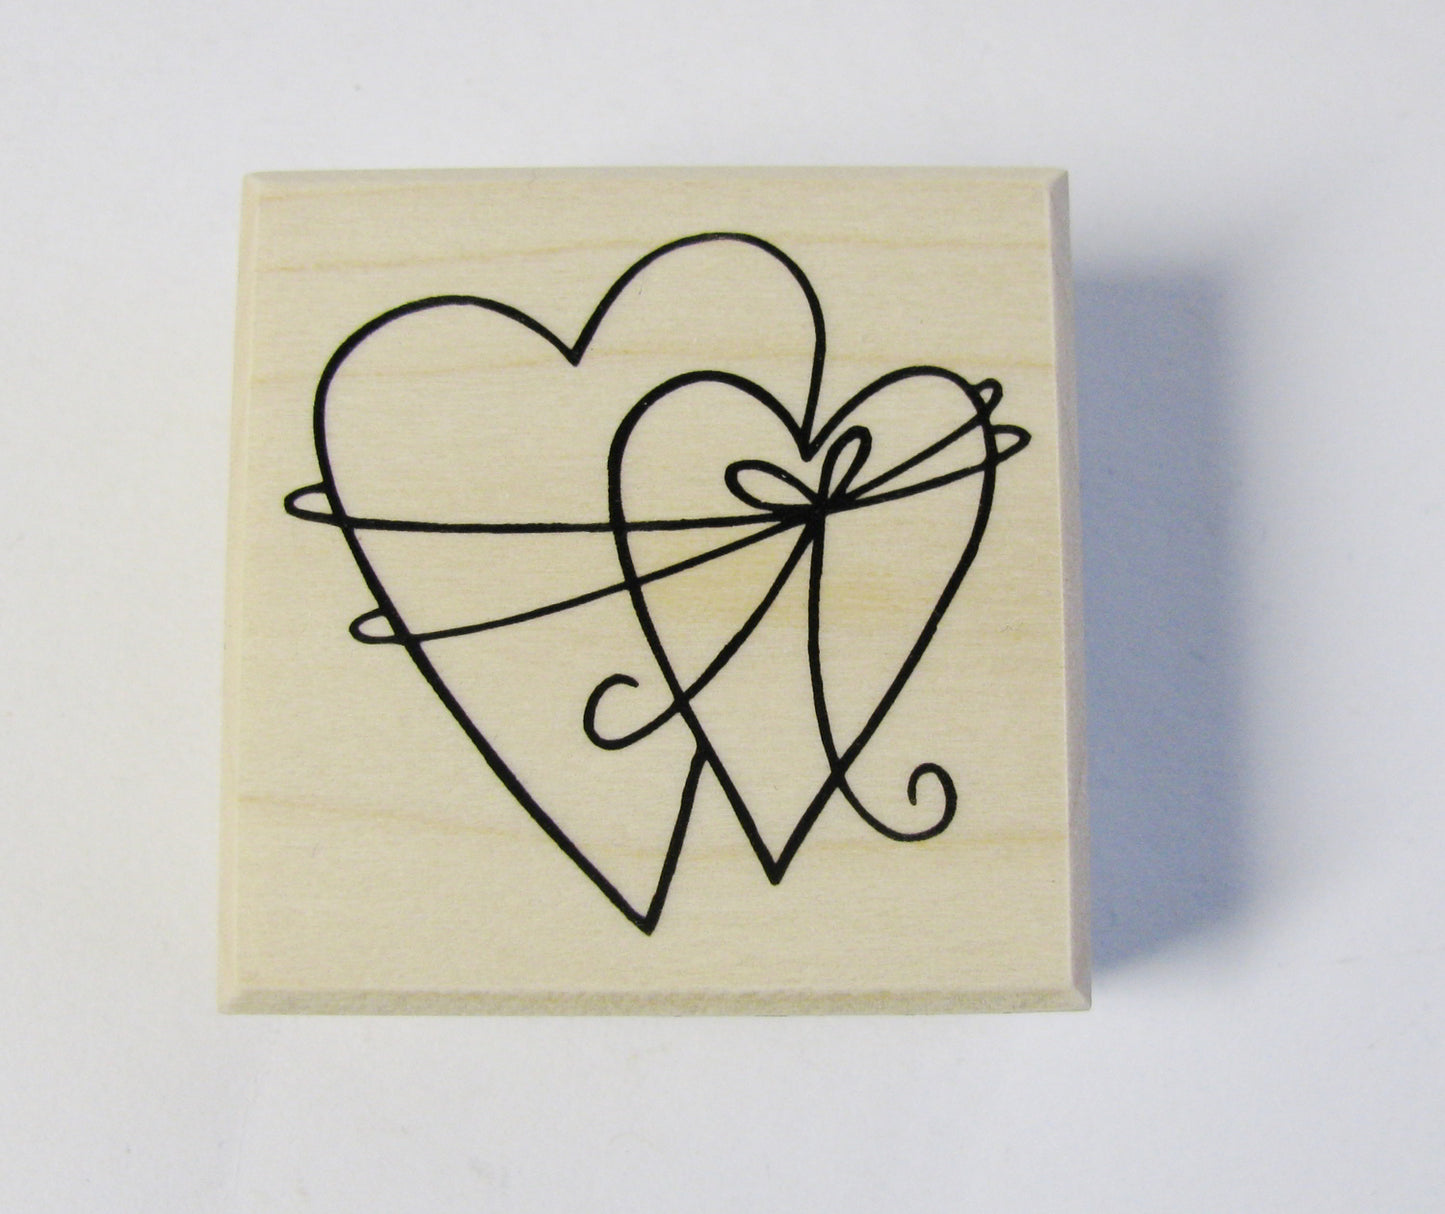 2 verbundene Herzen, Stempel, Hochzeit, Liebe, Karten gestalten Einladung